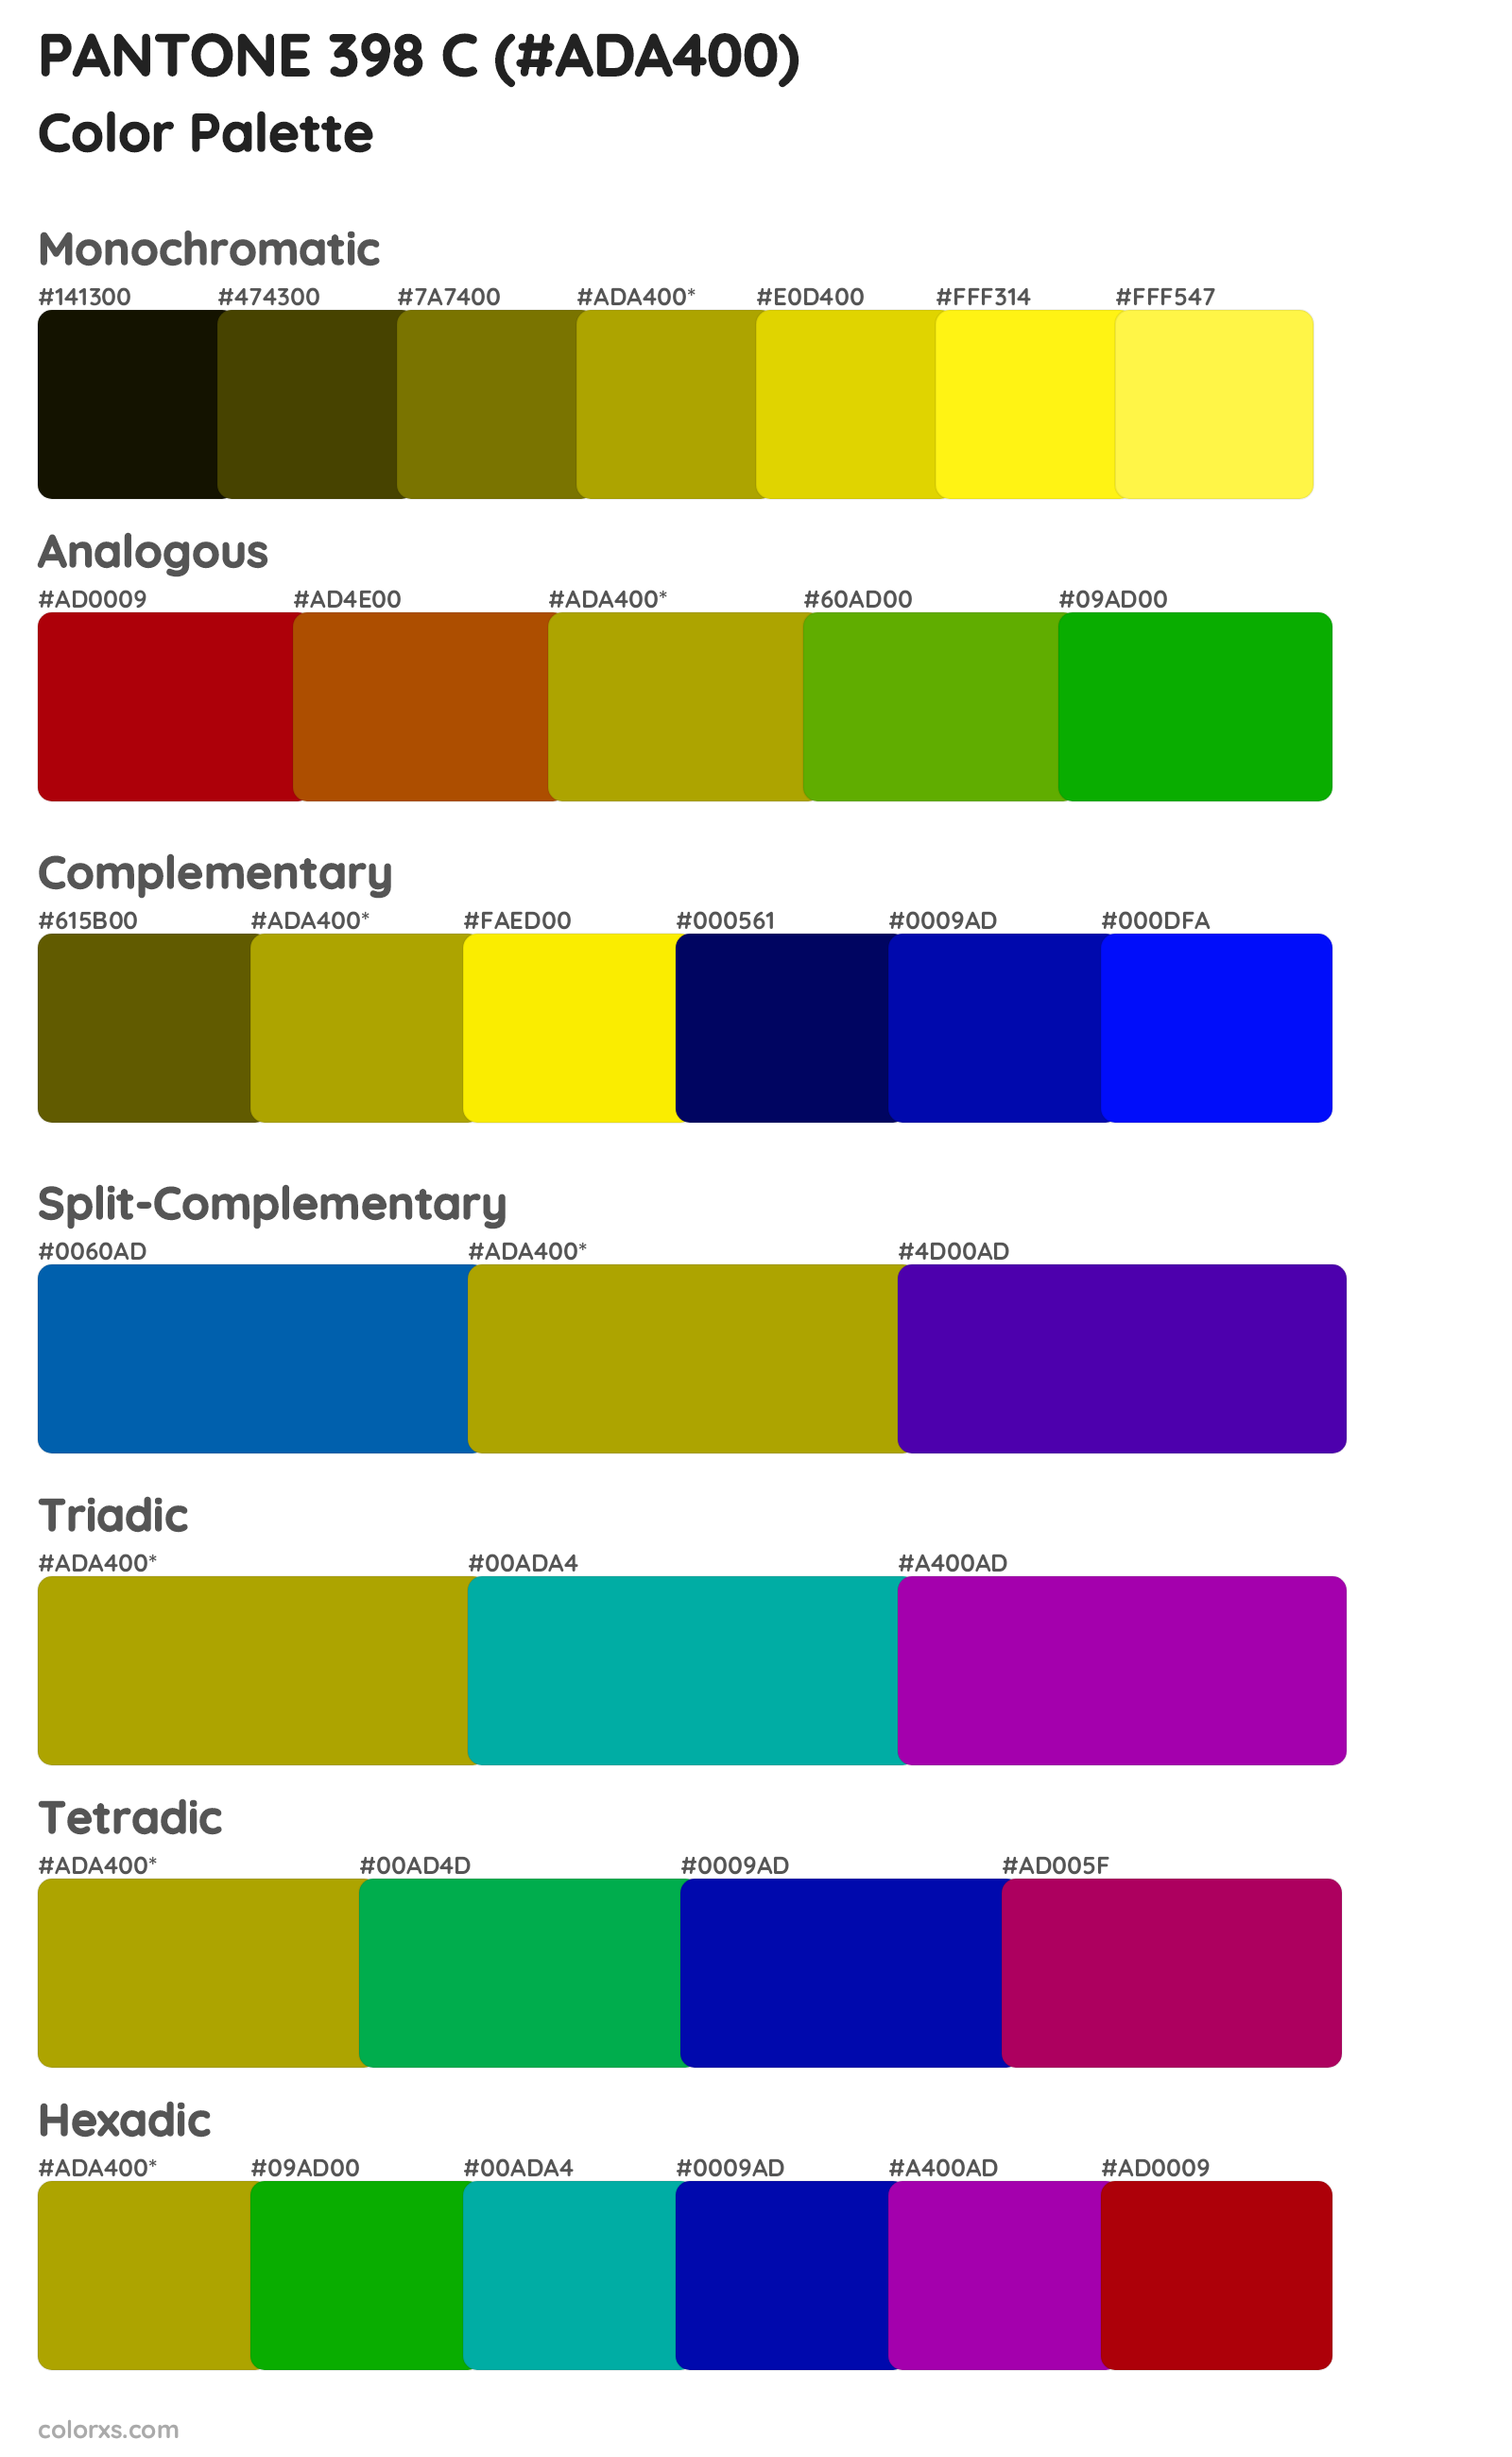 PANTONE 398 C Color Scheme Palettes